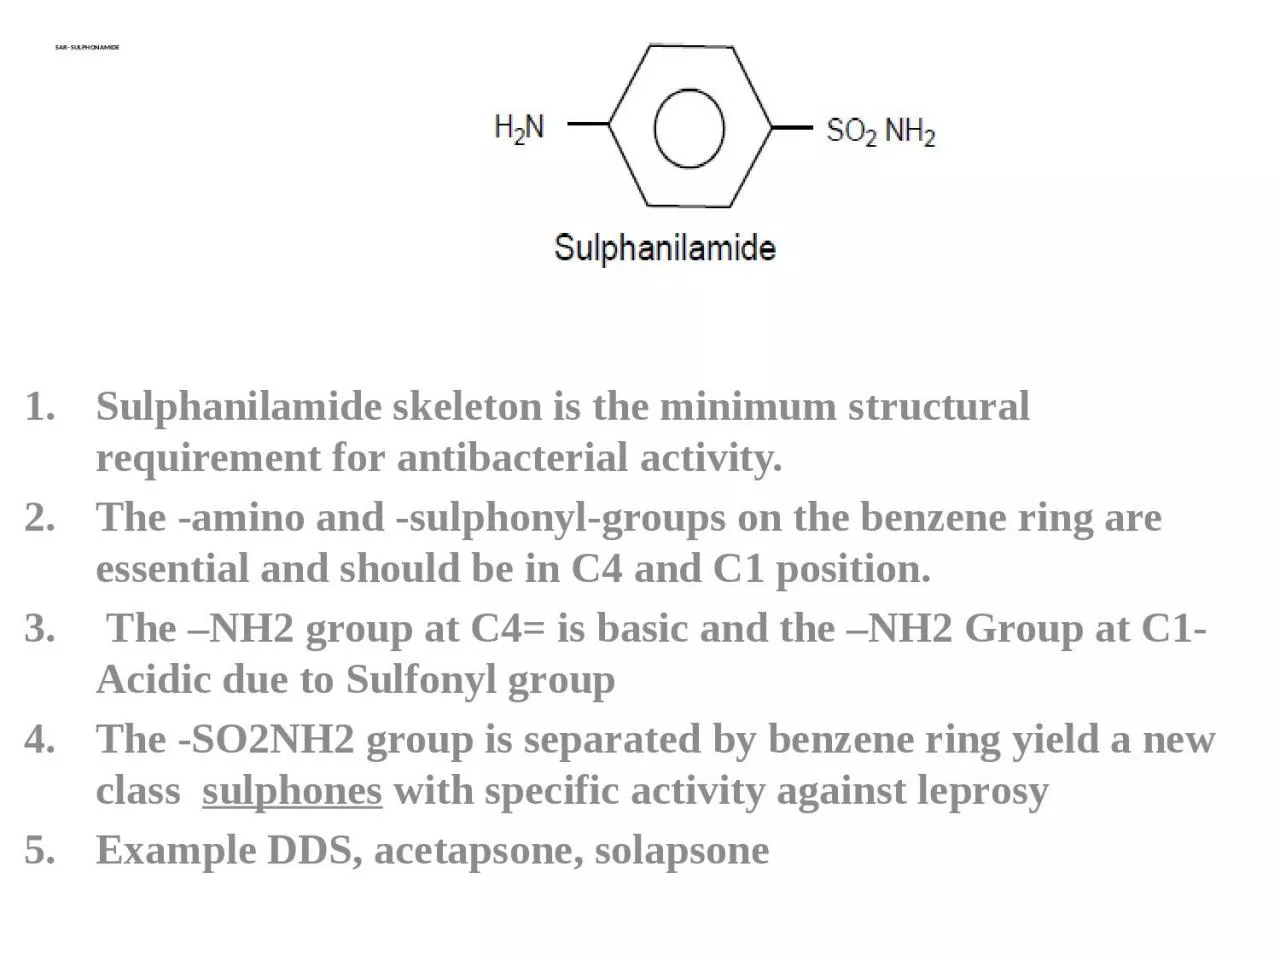 SAR- SULPHONAMIDE   Sulphanilamide